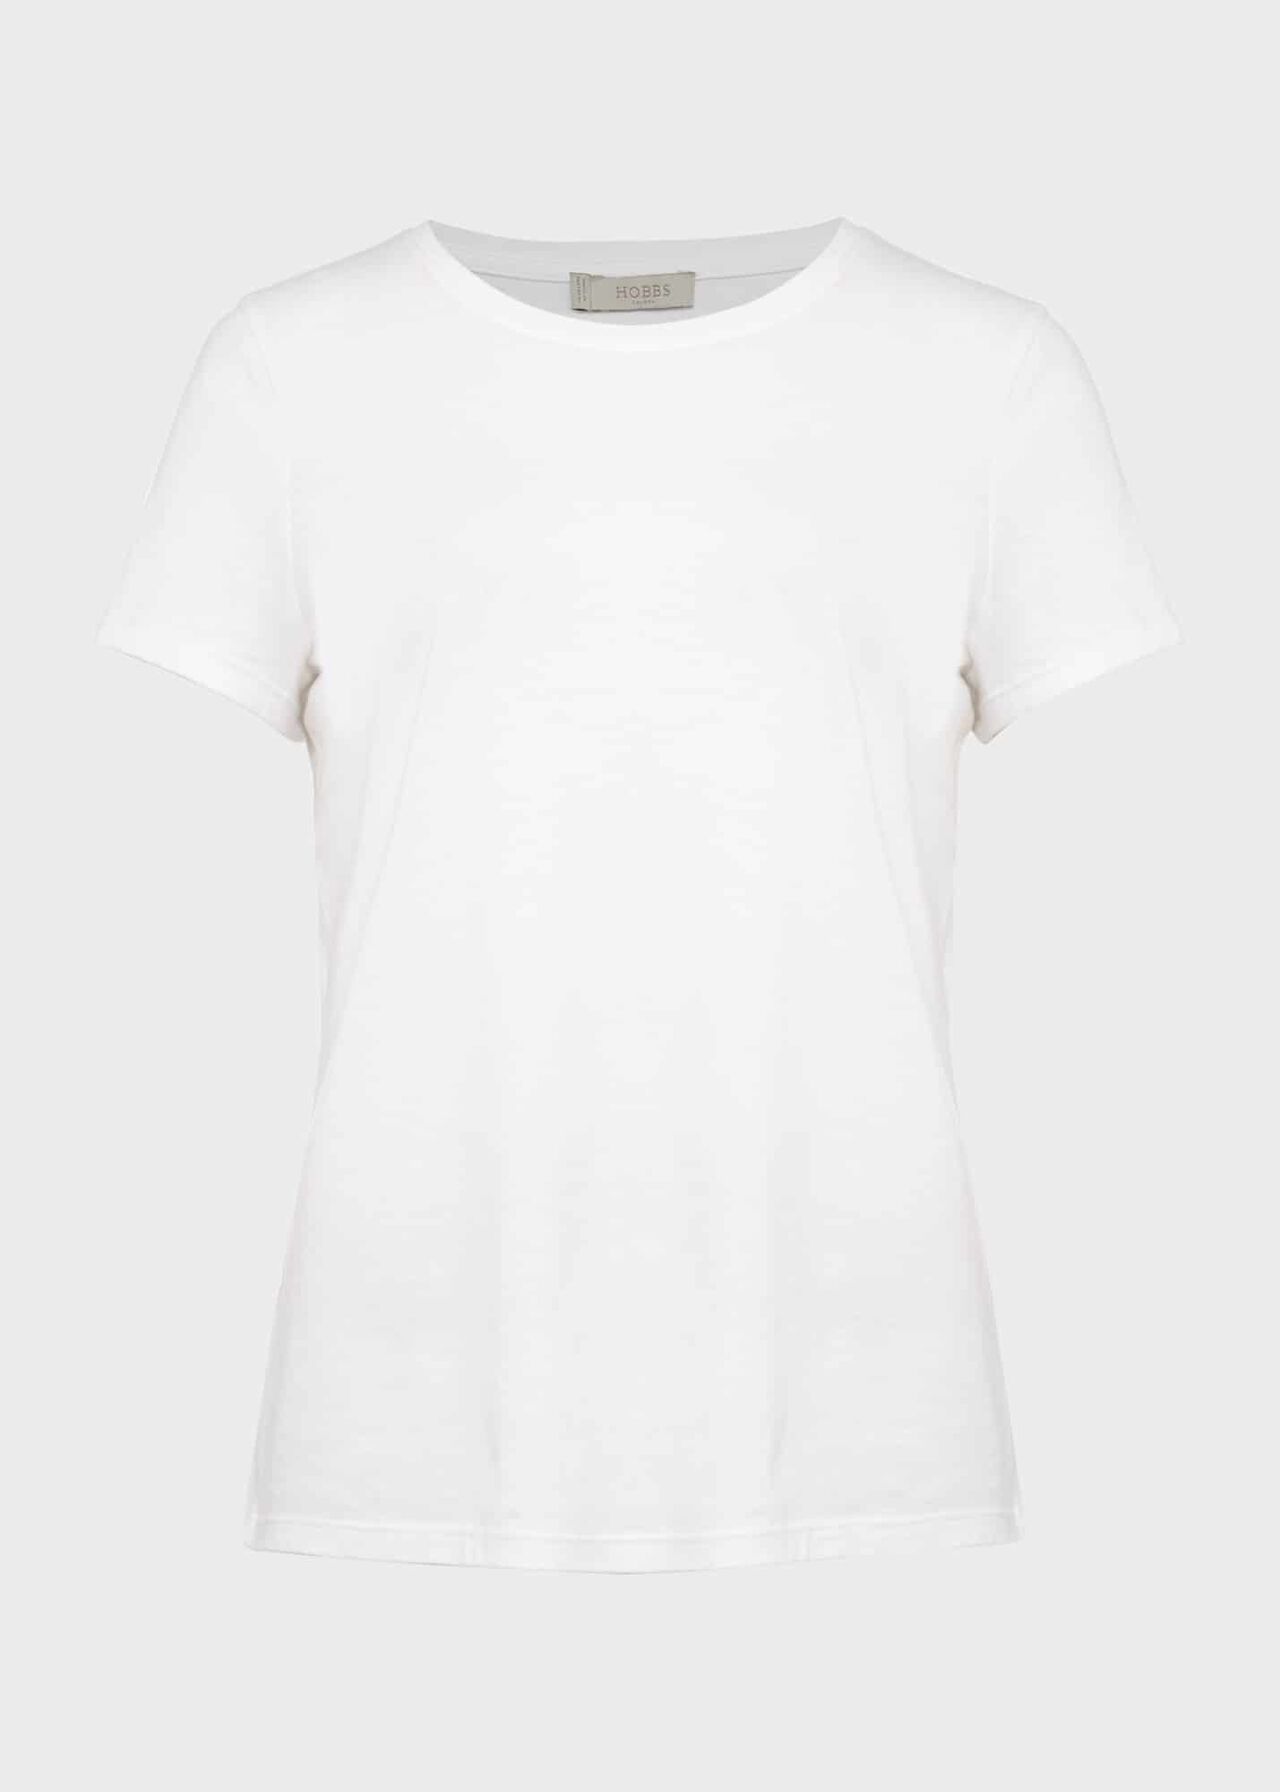 Pixie Cotton T-Shirt | Hobbs | Hobbs